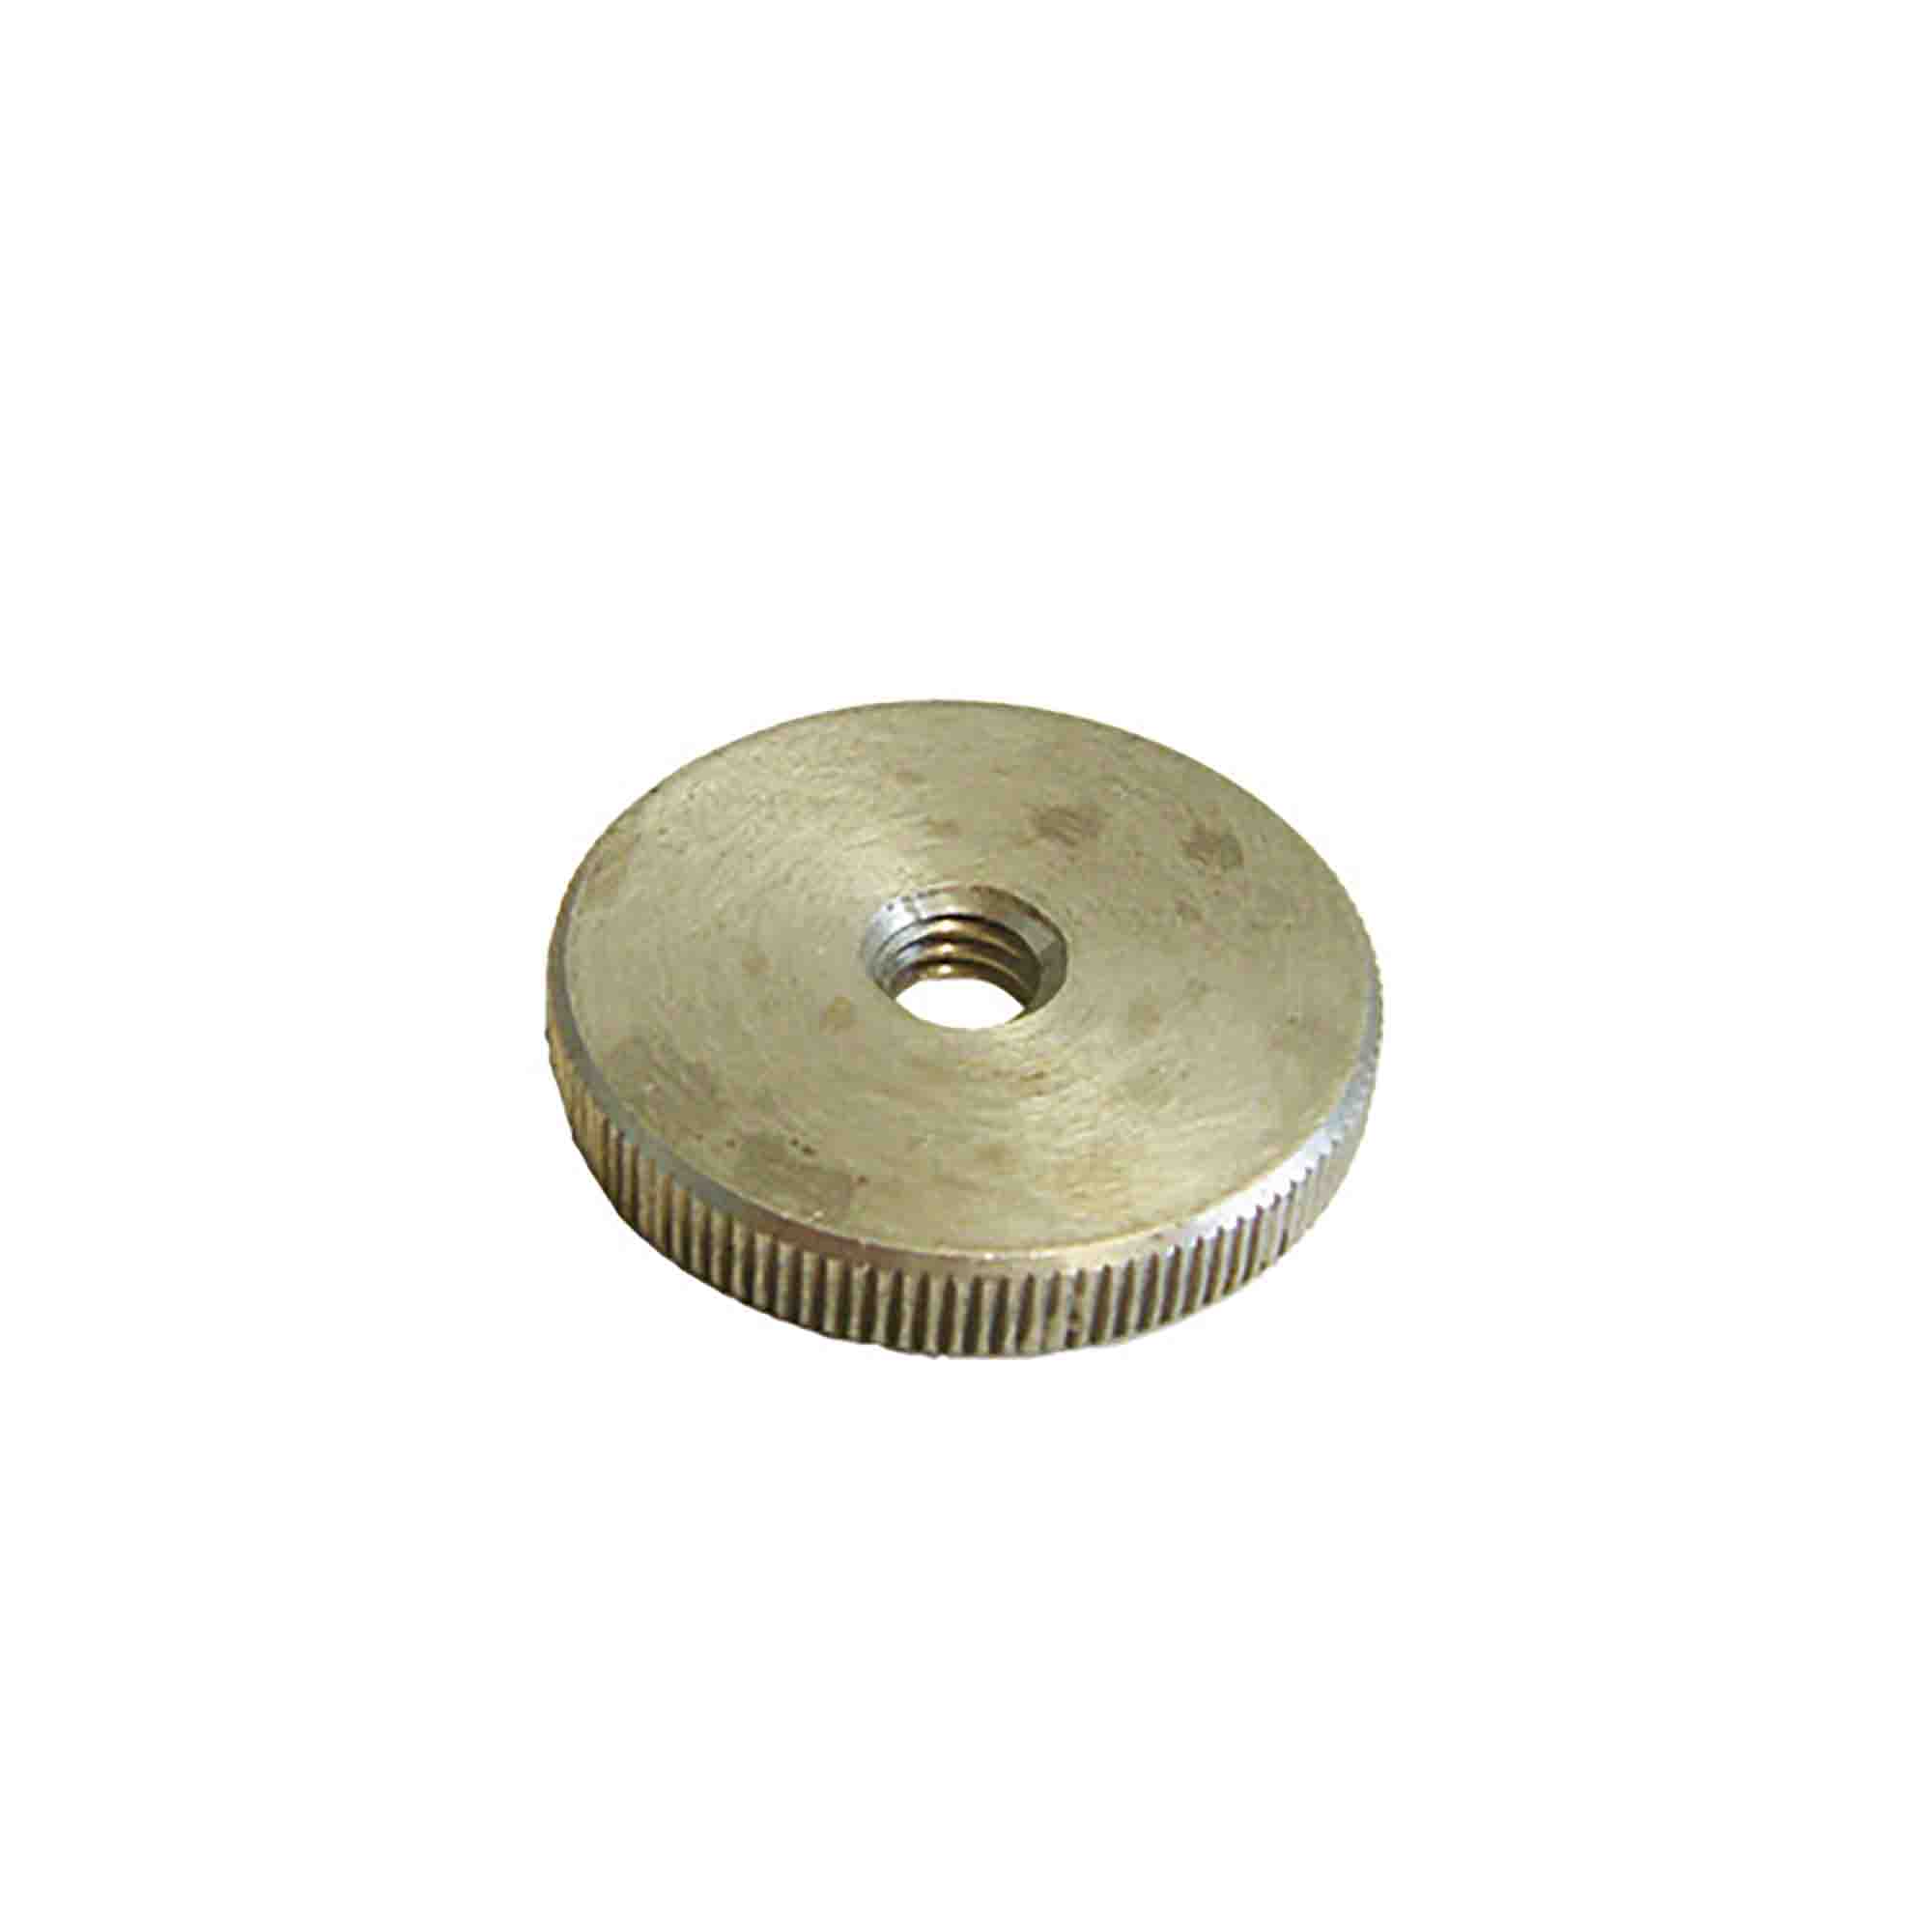 height adjustment screw (knurled nut)